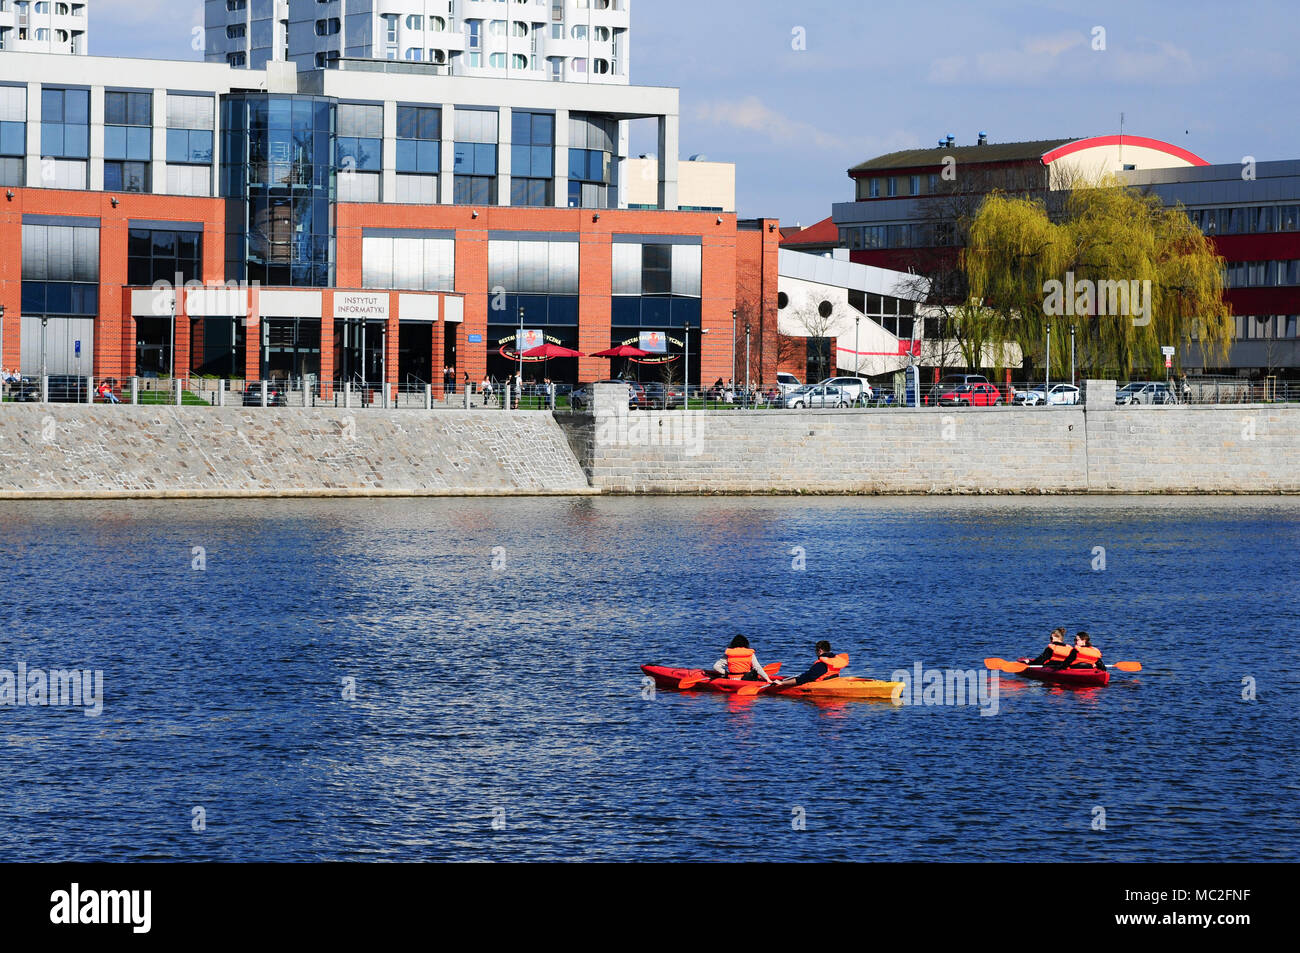 Personnes kayak dans le centre-ville, sur la rivière Odra. Wroclaw. Pologne Avril 2018 Banque D'Images